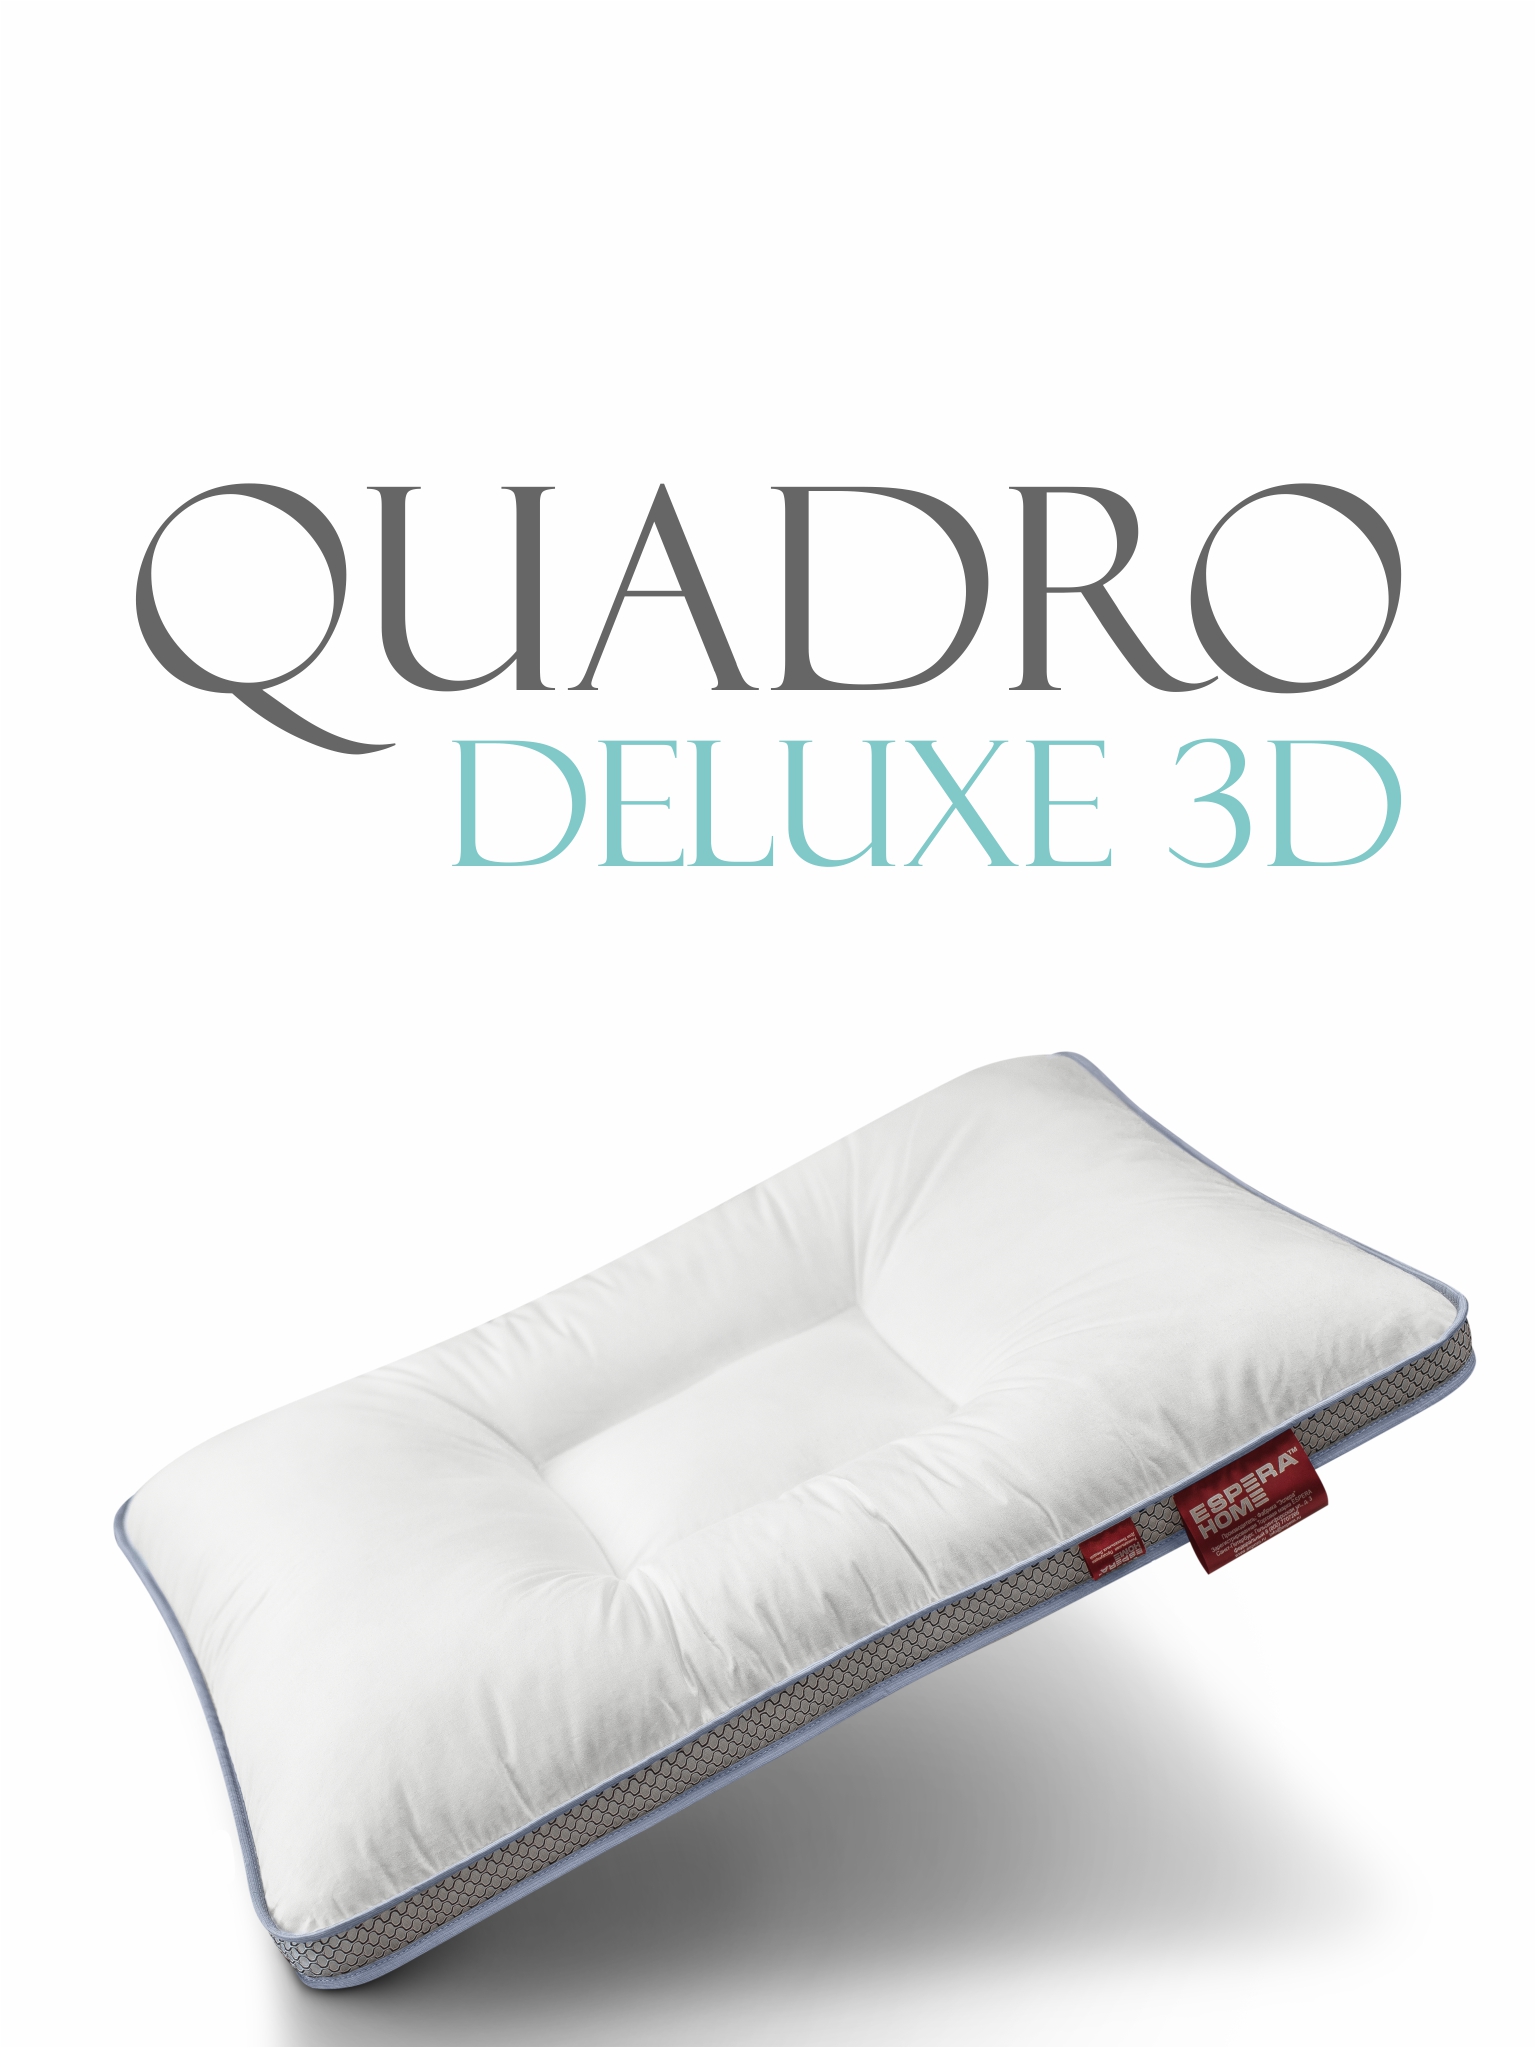   Quadro DeLux 3D /   3   5070 